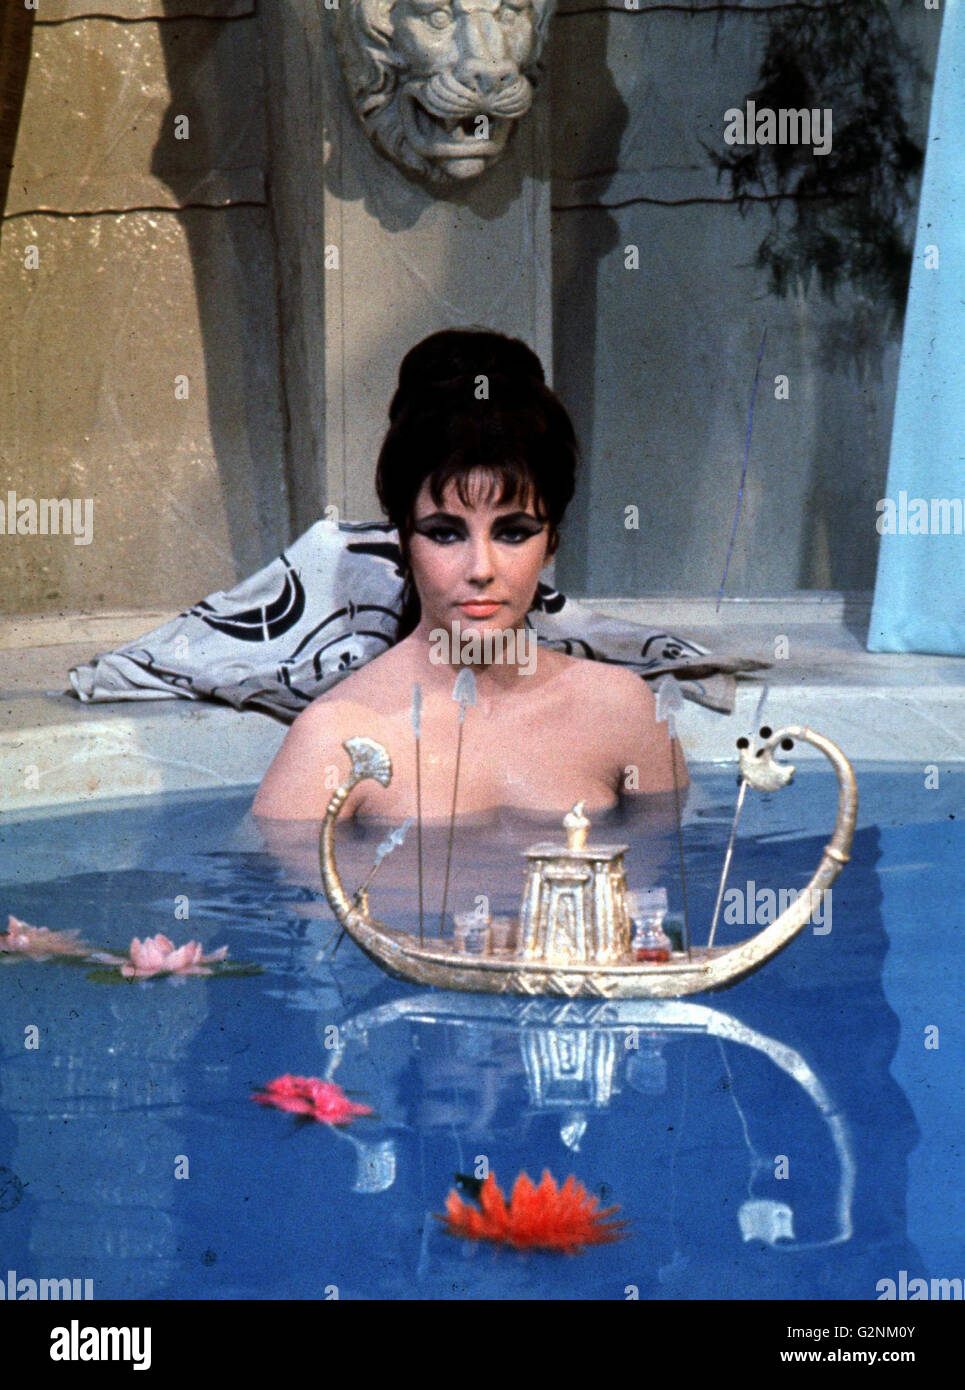 Elizabeth Taylor come Cleopatra nel 1963 Epico Dramma film diretto da Joseph L. Mankiewicz. Foto Stock